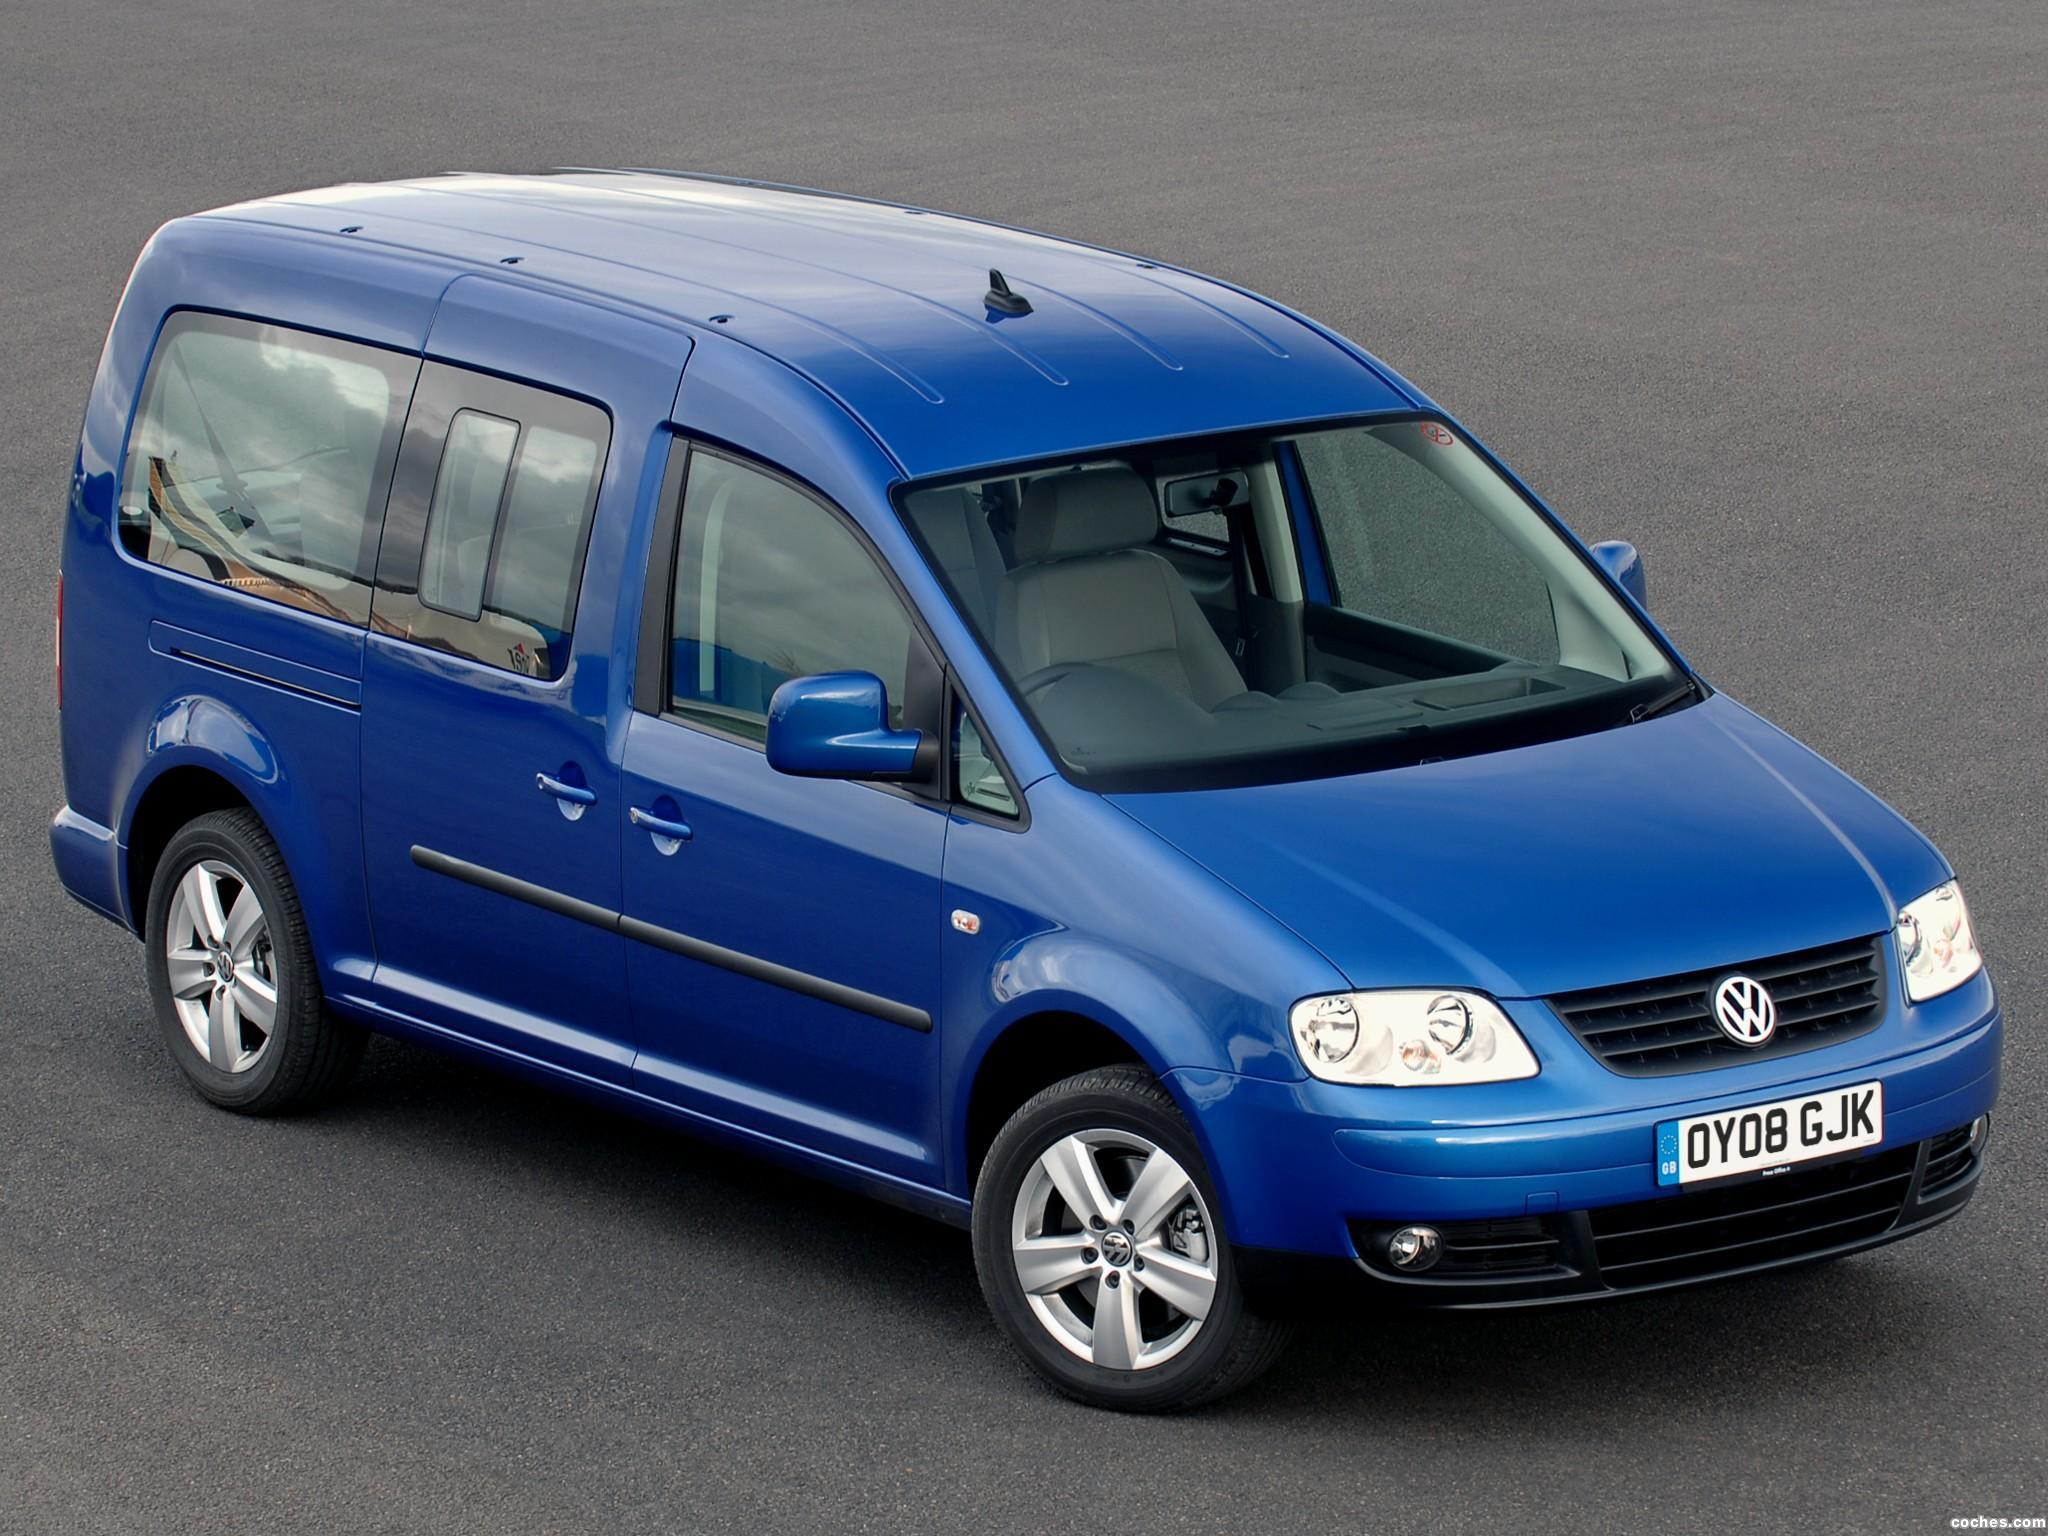 Fotos de Volkswagen Caddy Maxi Life UK 2007